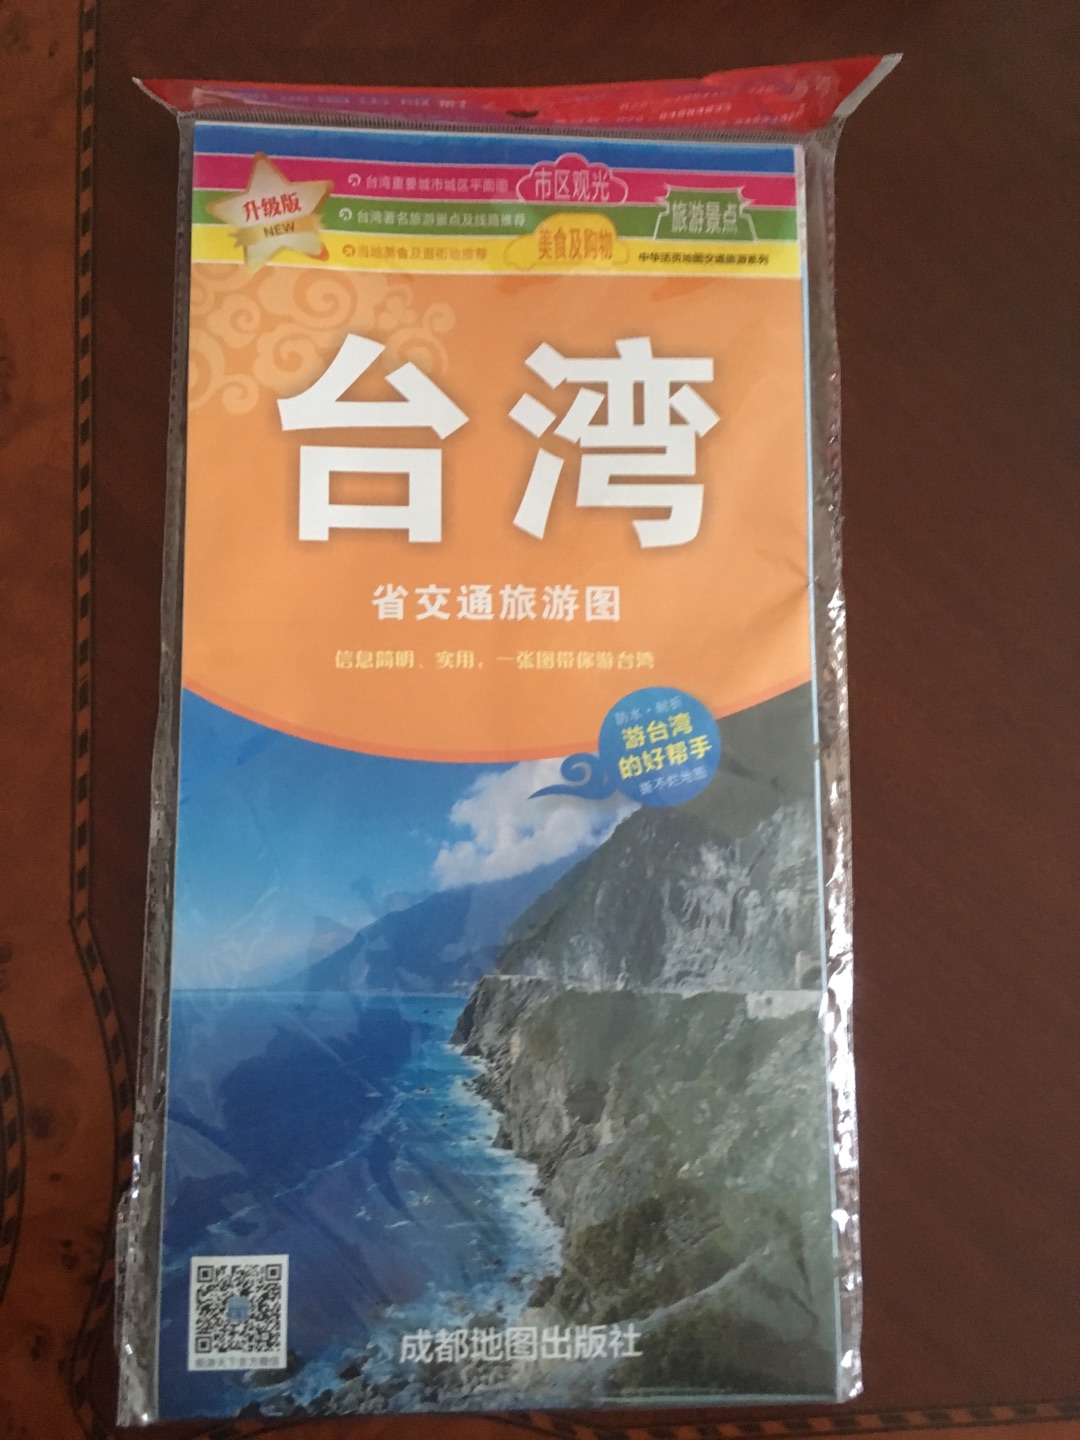 不知道什么时候能去台湾旅游，可以先了解一下。